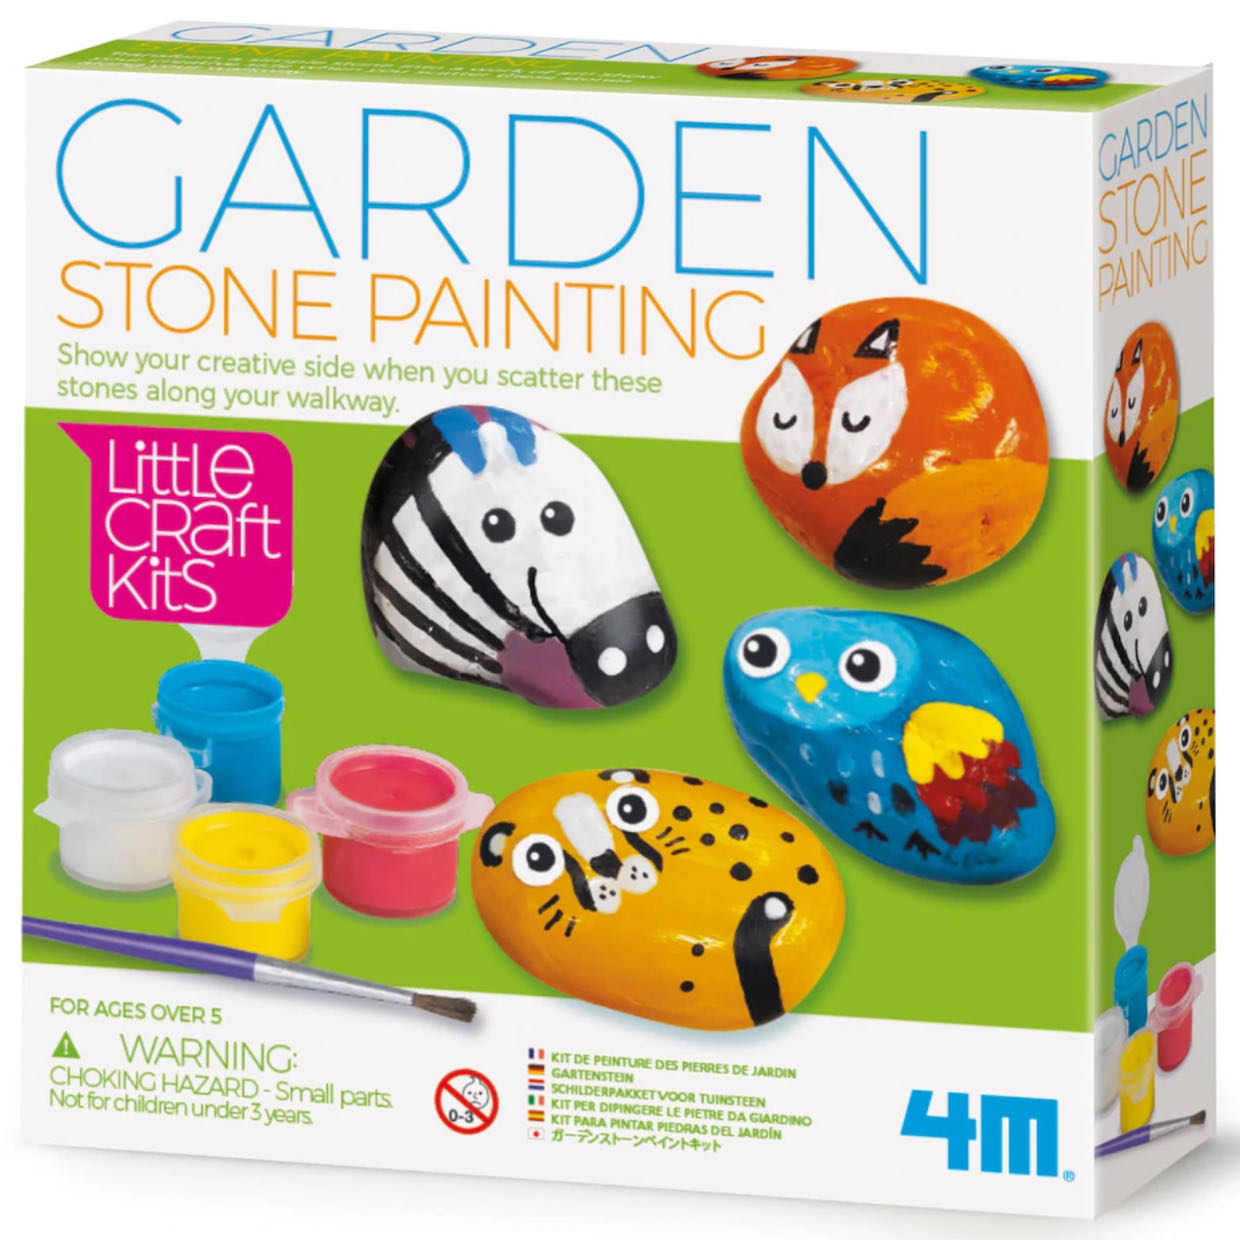 Garden Stone Painting Kit DIY Art Kit for Kids - A